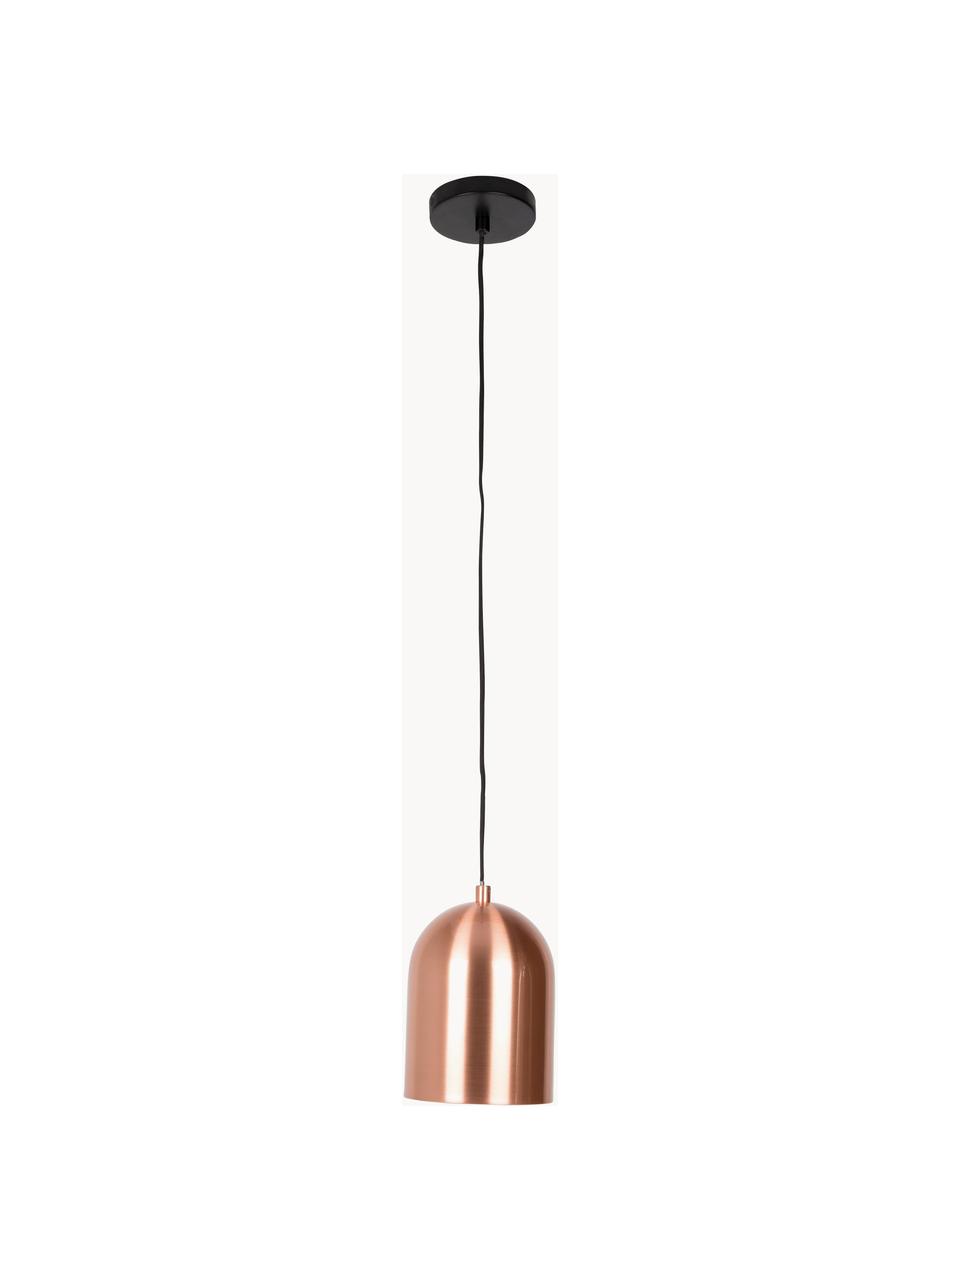 Kleine hanglamp Marvel met honingraatstructuur, Lampenkap: verkoperd metaal, Baldakijn: gecoat metaal, Koperkleurig, Ø 15 x H 24 cm